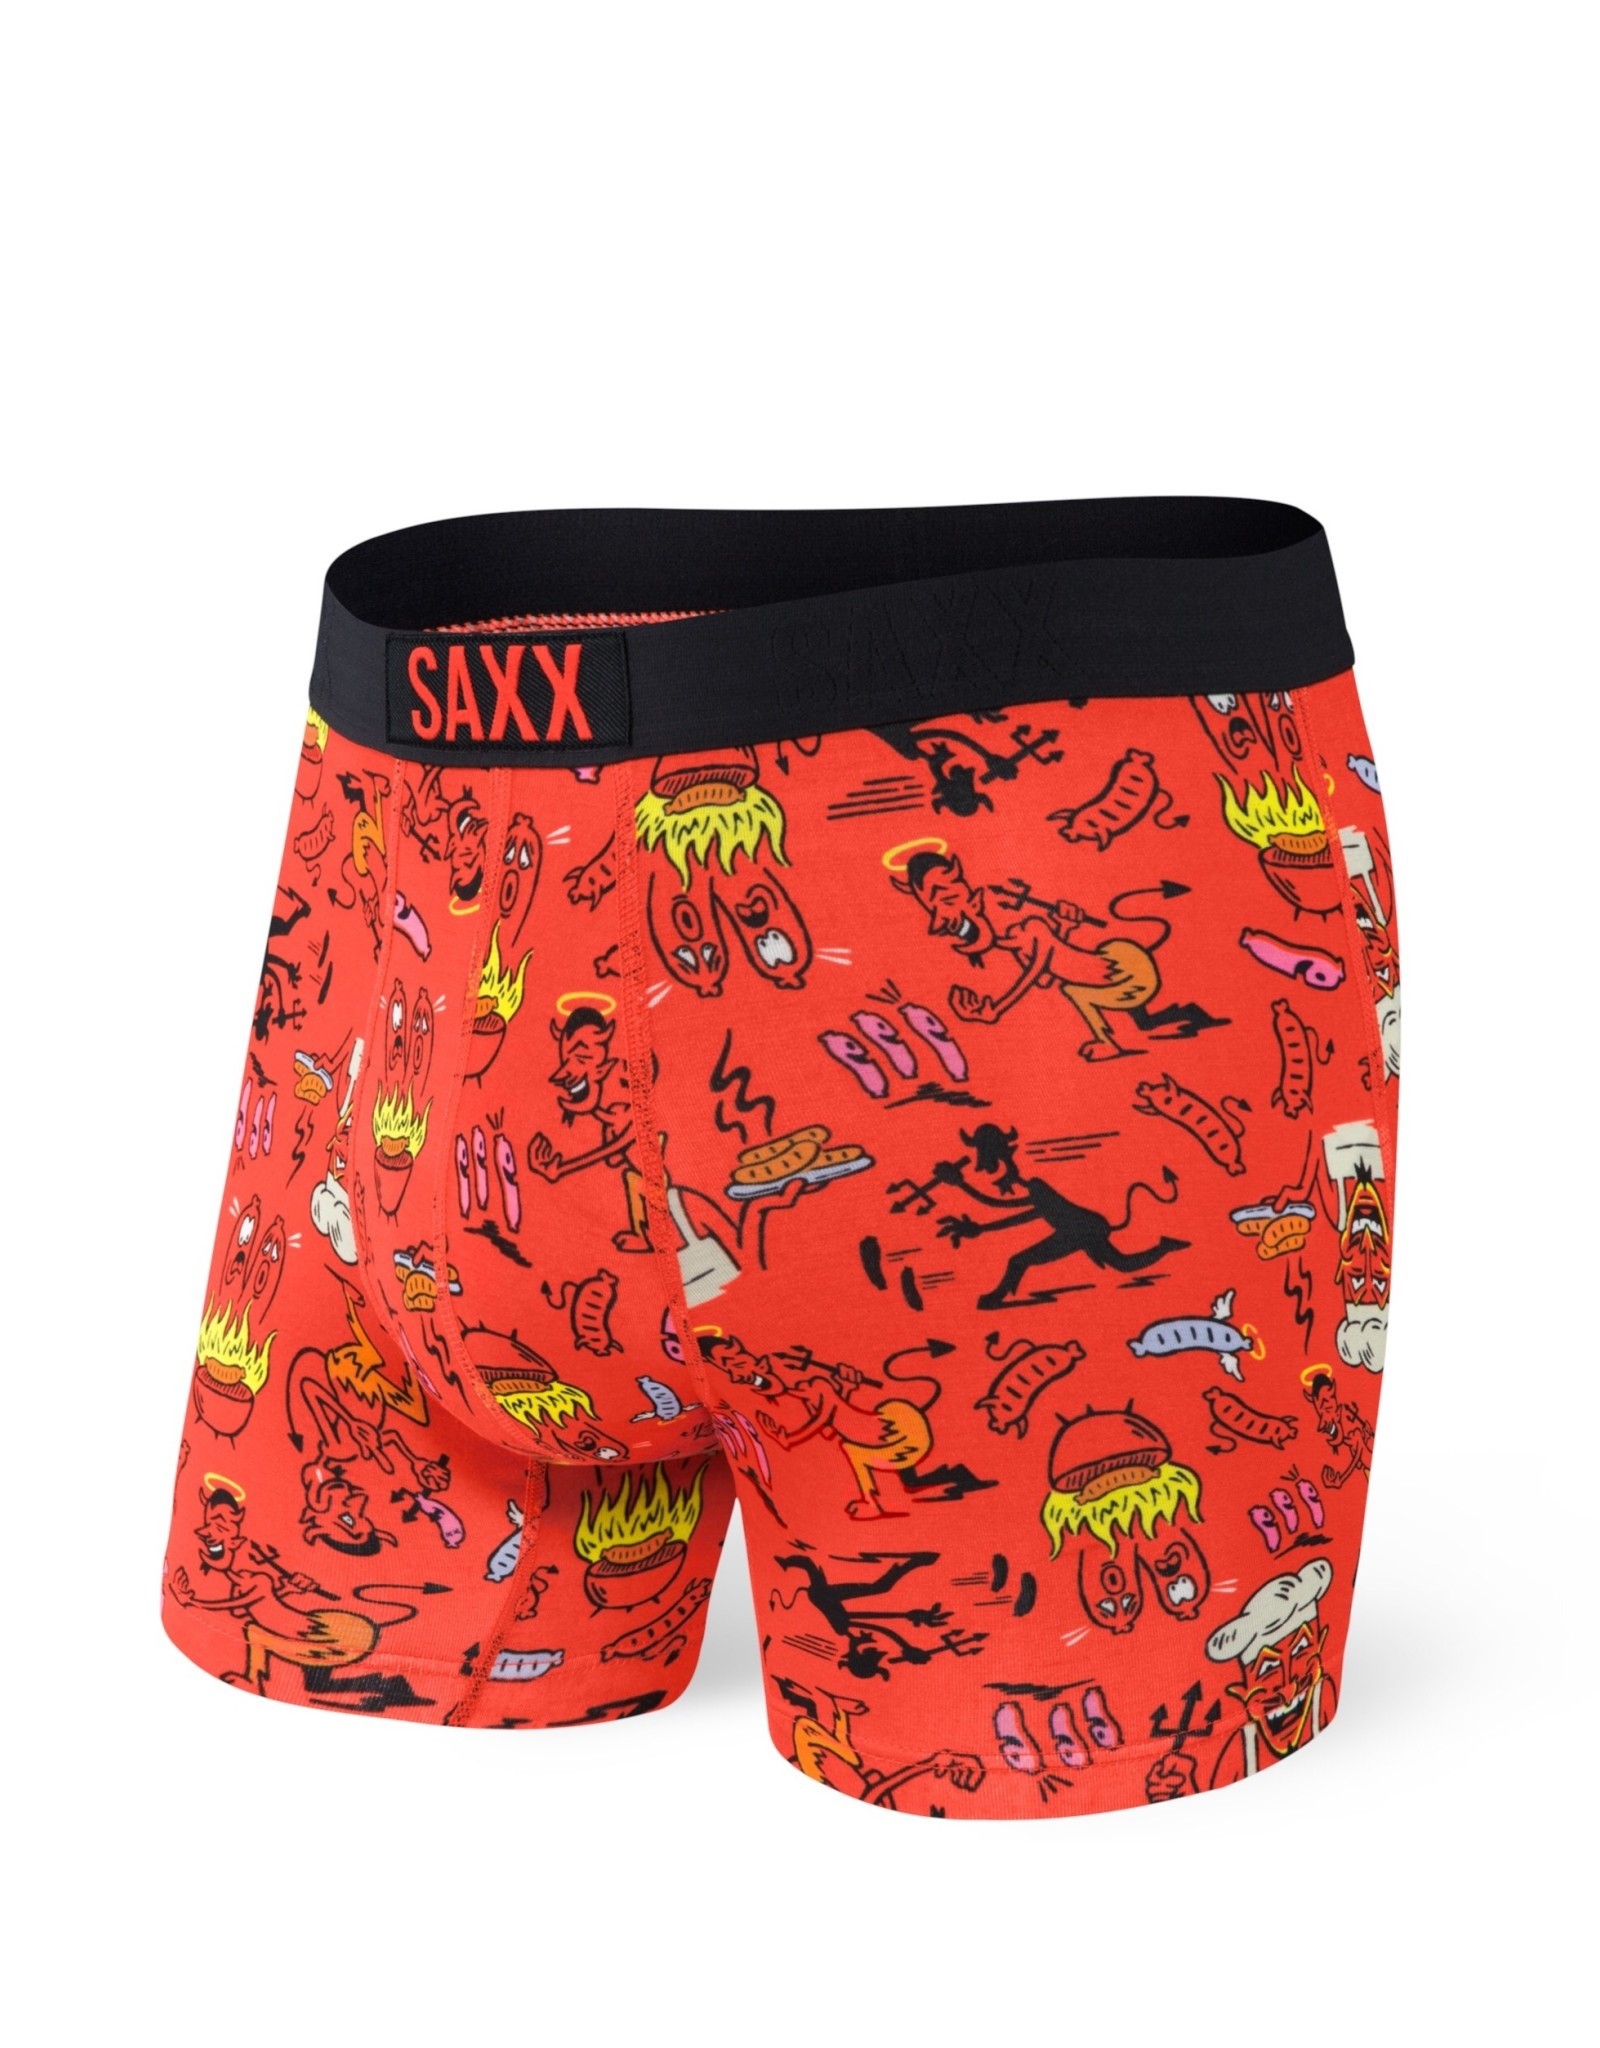 Saxx Vibe - Boxer Brief SXBM35 Men’s - Shoes & M'Orr